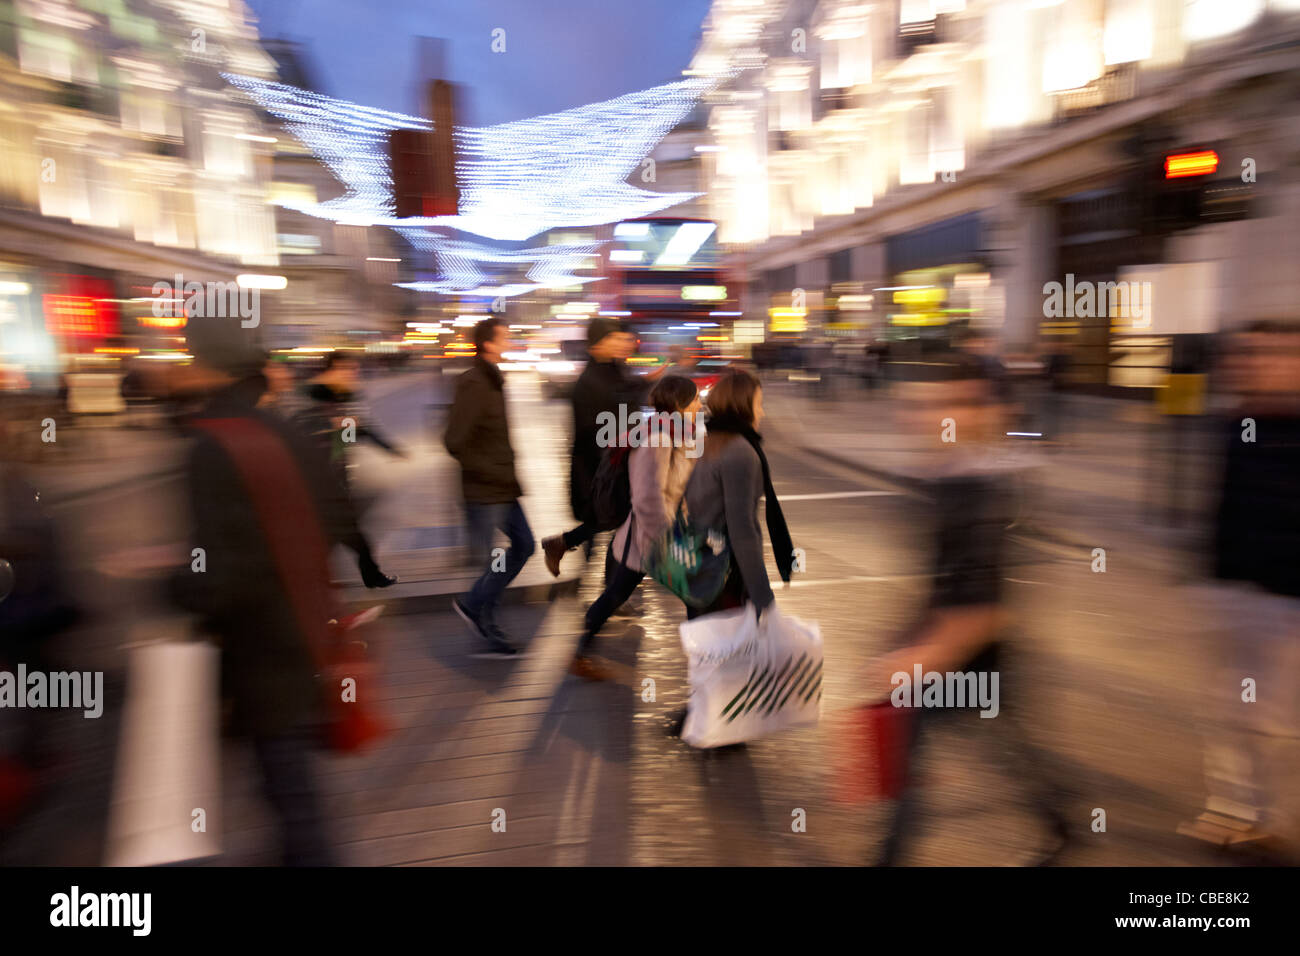 Les personnes qui traversent occupé à Oxford street Christmas shopping Londres Angleterre Royaume-Uni uk flou délibéré d'action (PAN) Banque D'Images